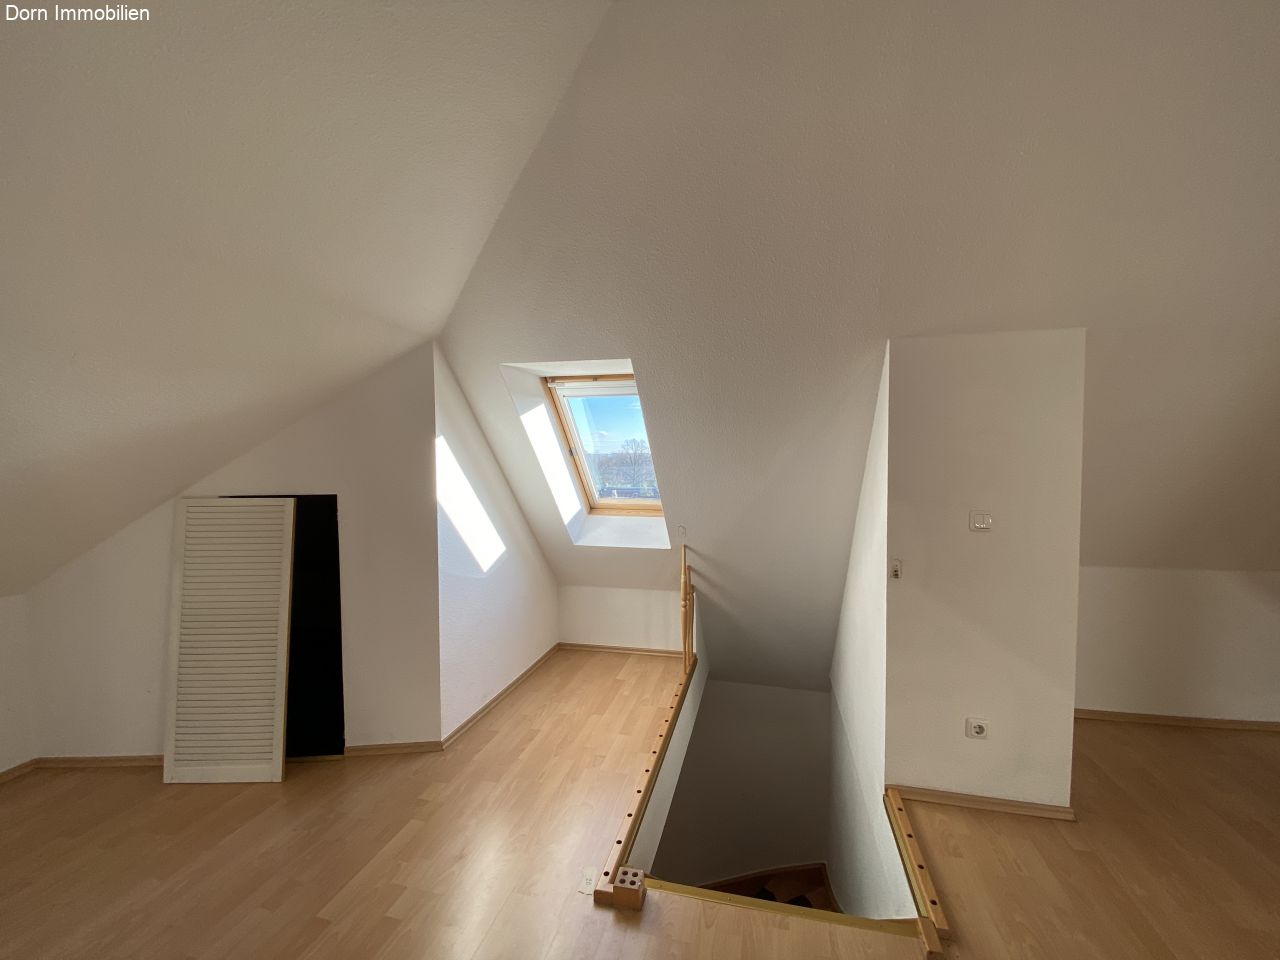 Wohnzimmer mit kleinem Abstellraum